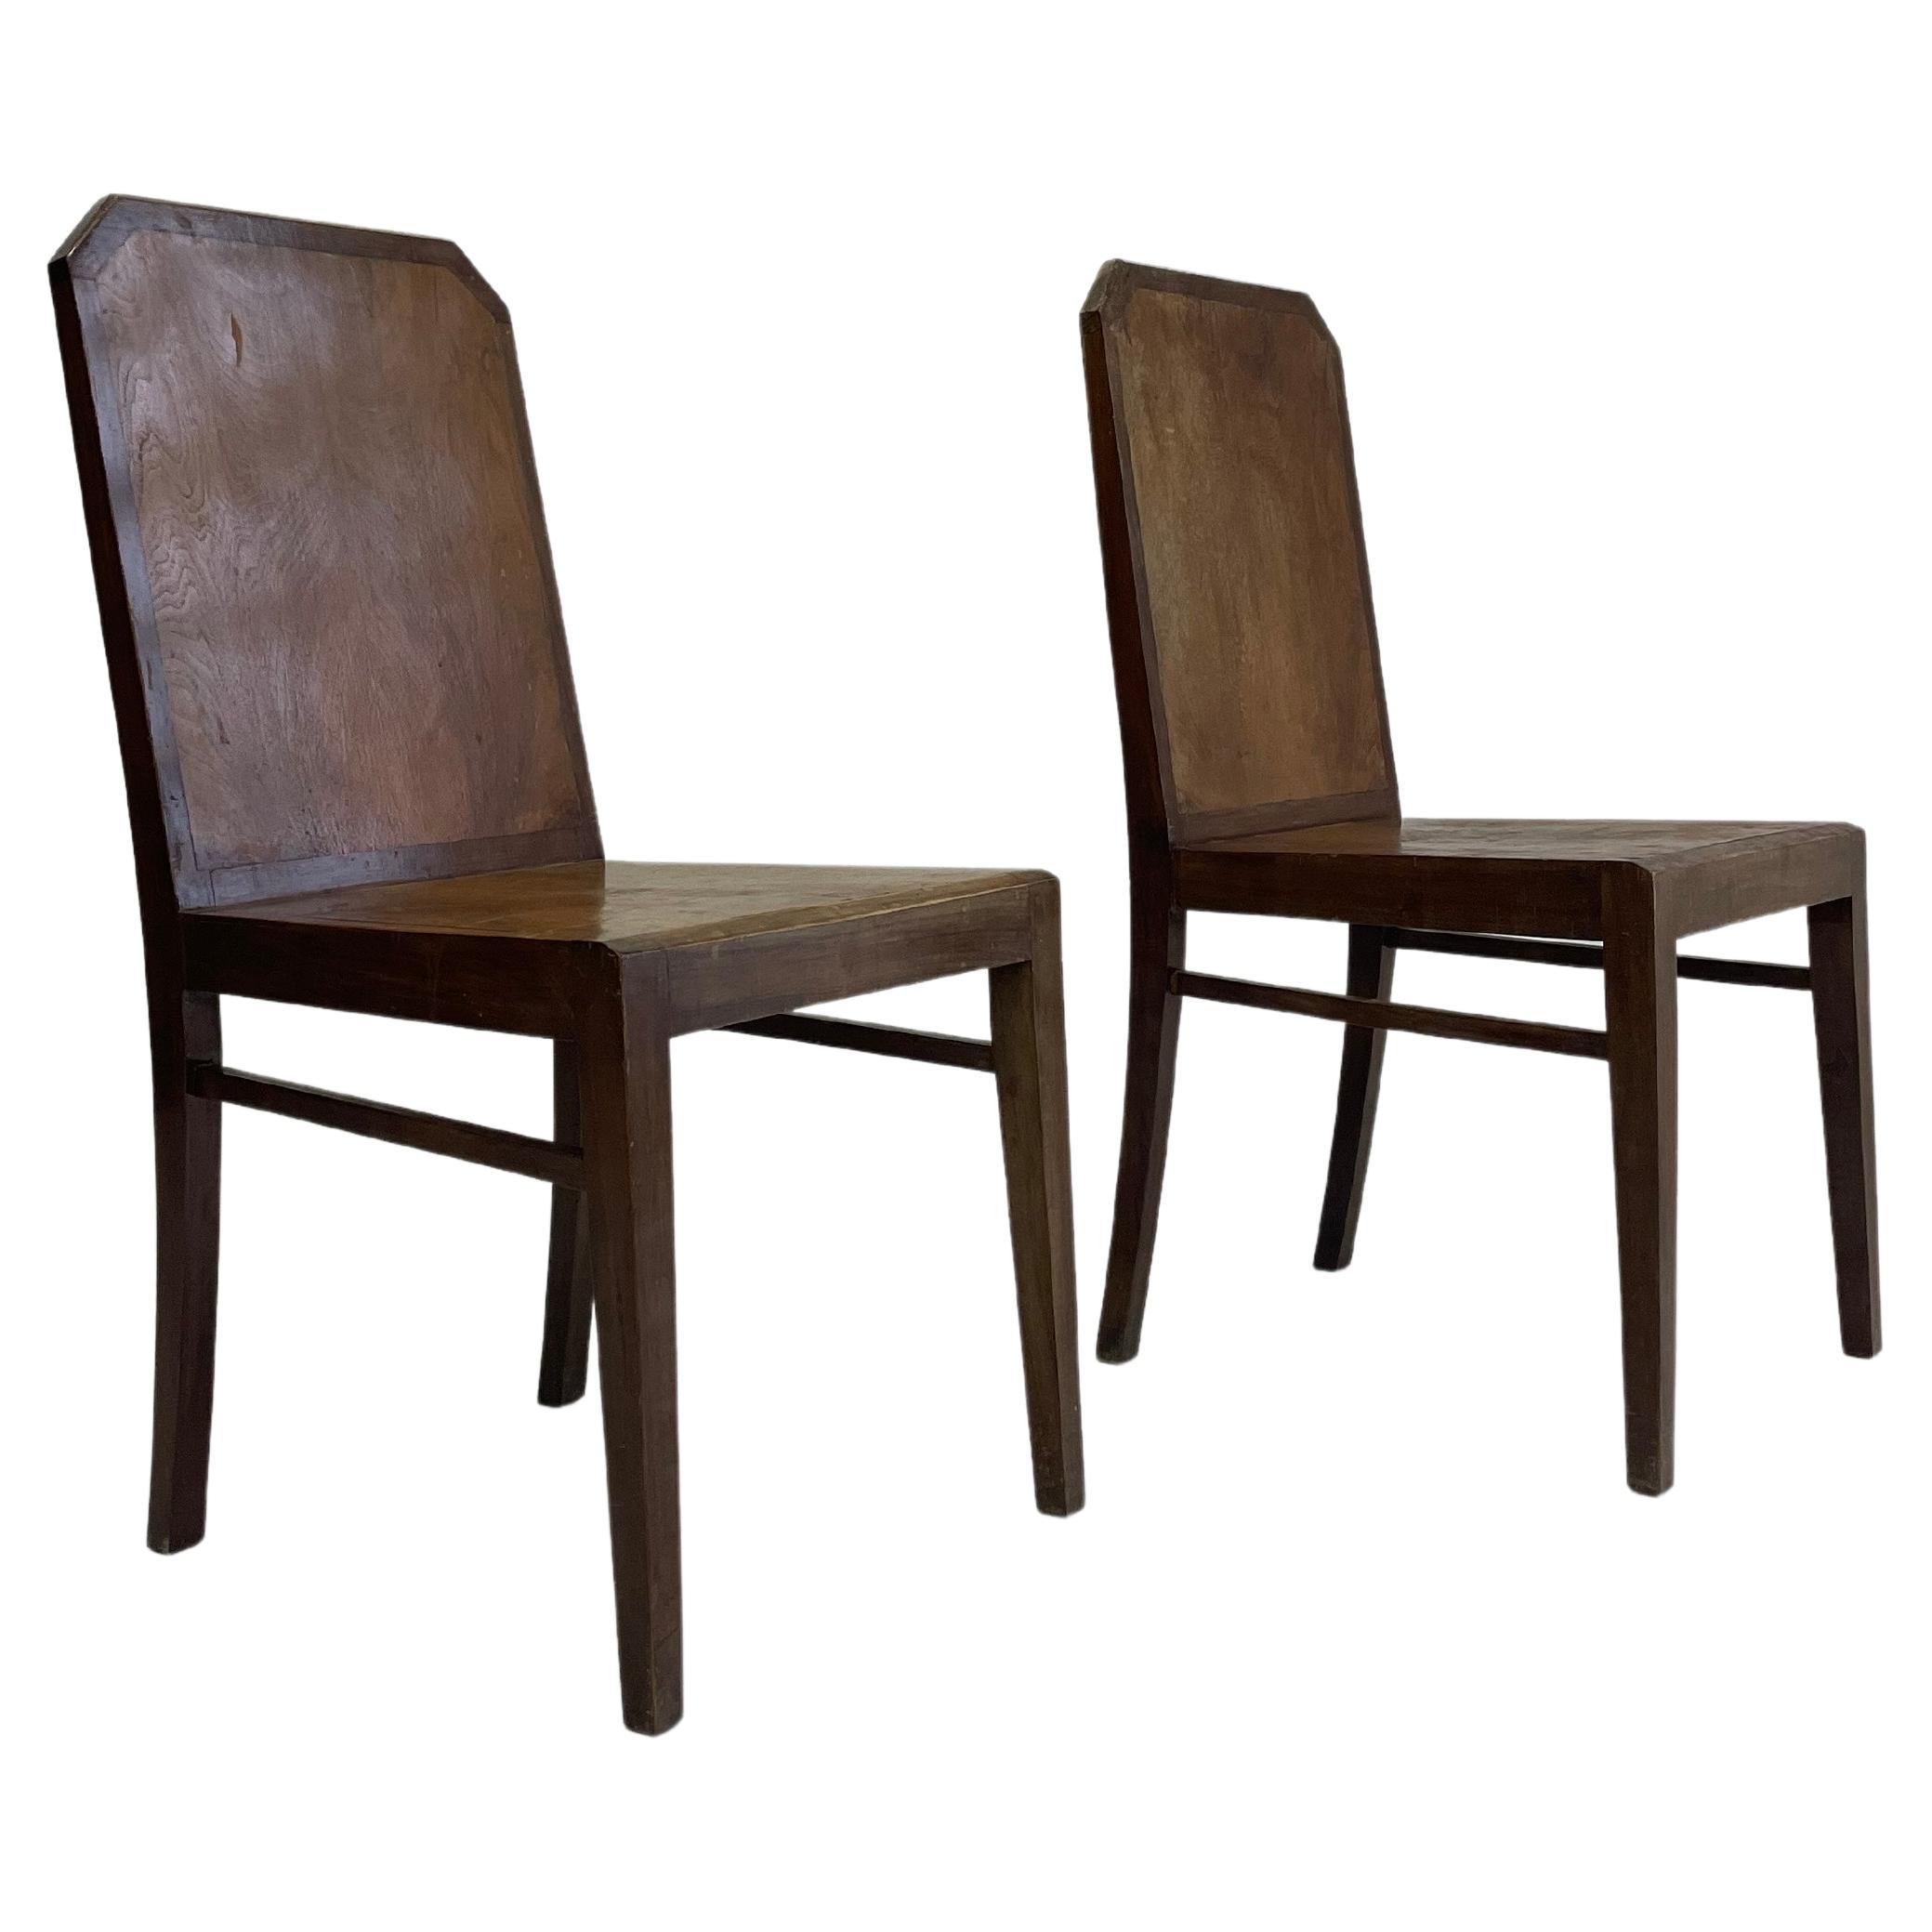 1930. Set 2 chairs by Rudolf Steiner